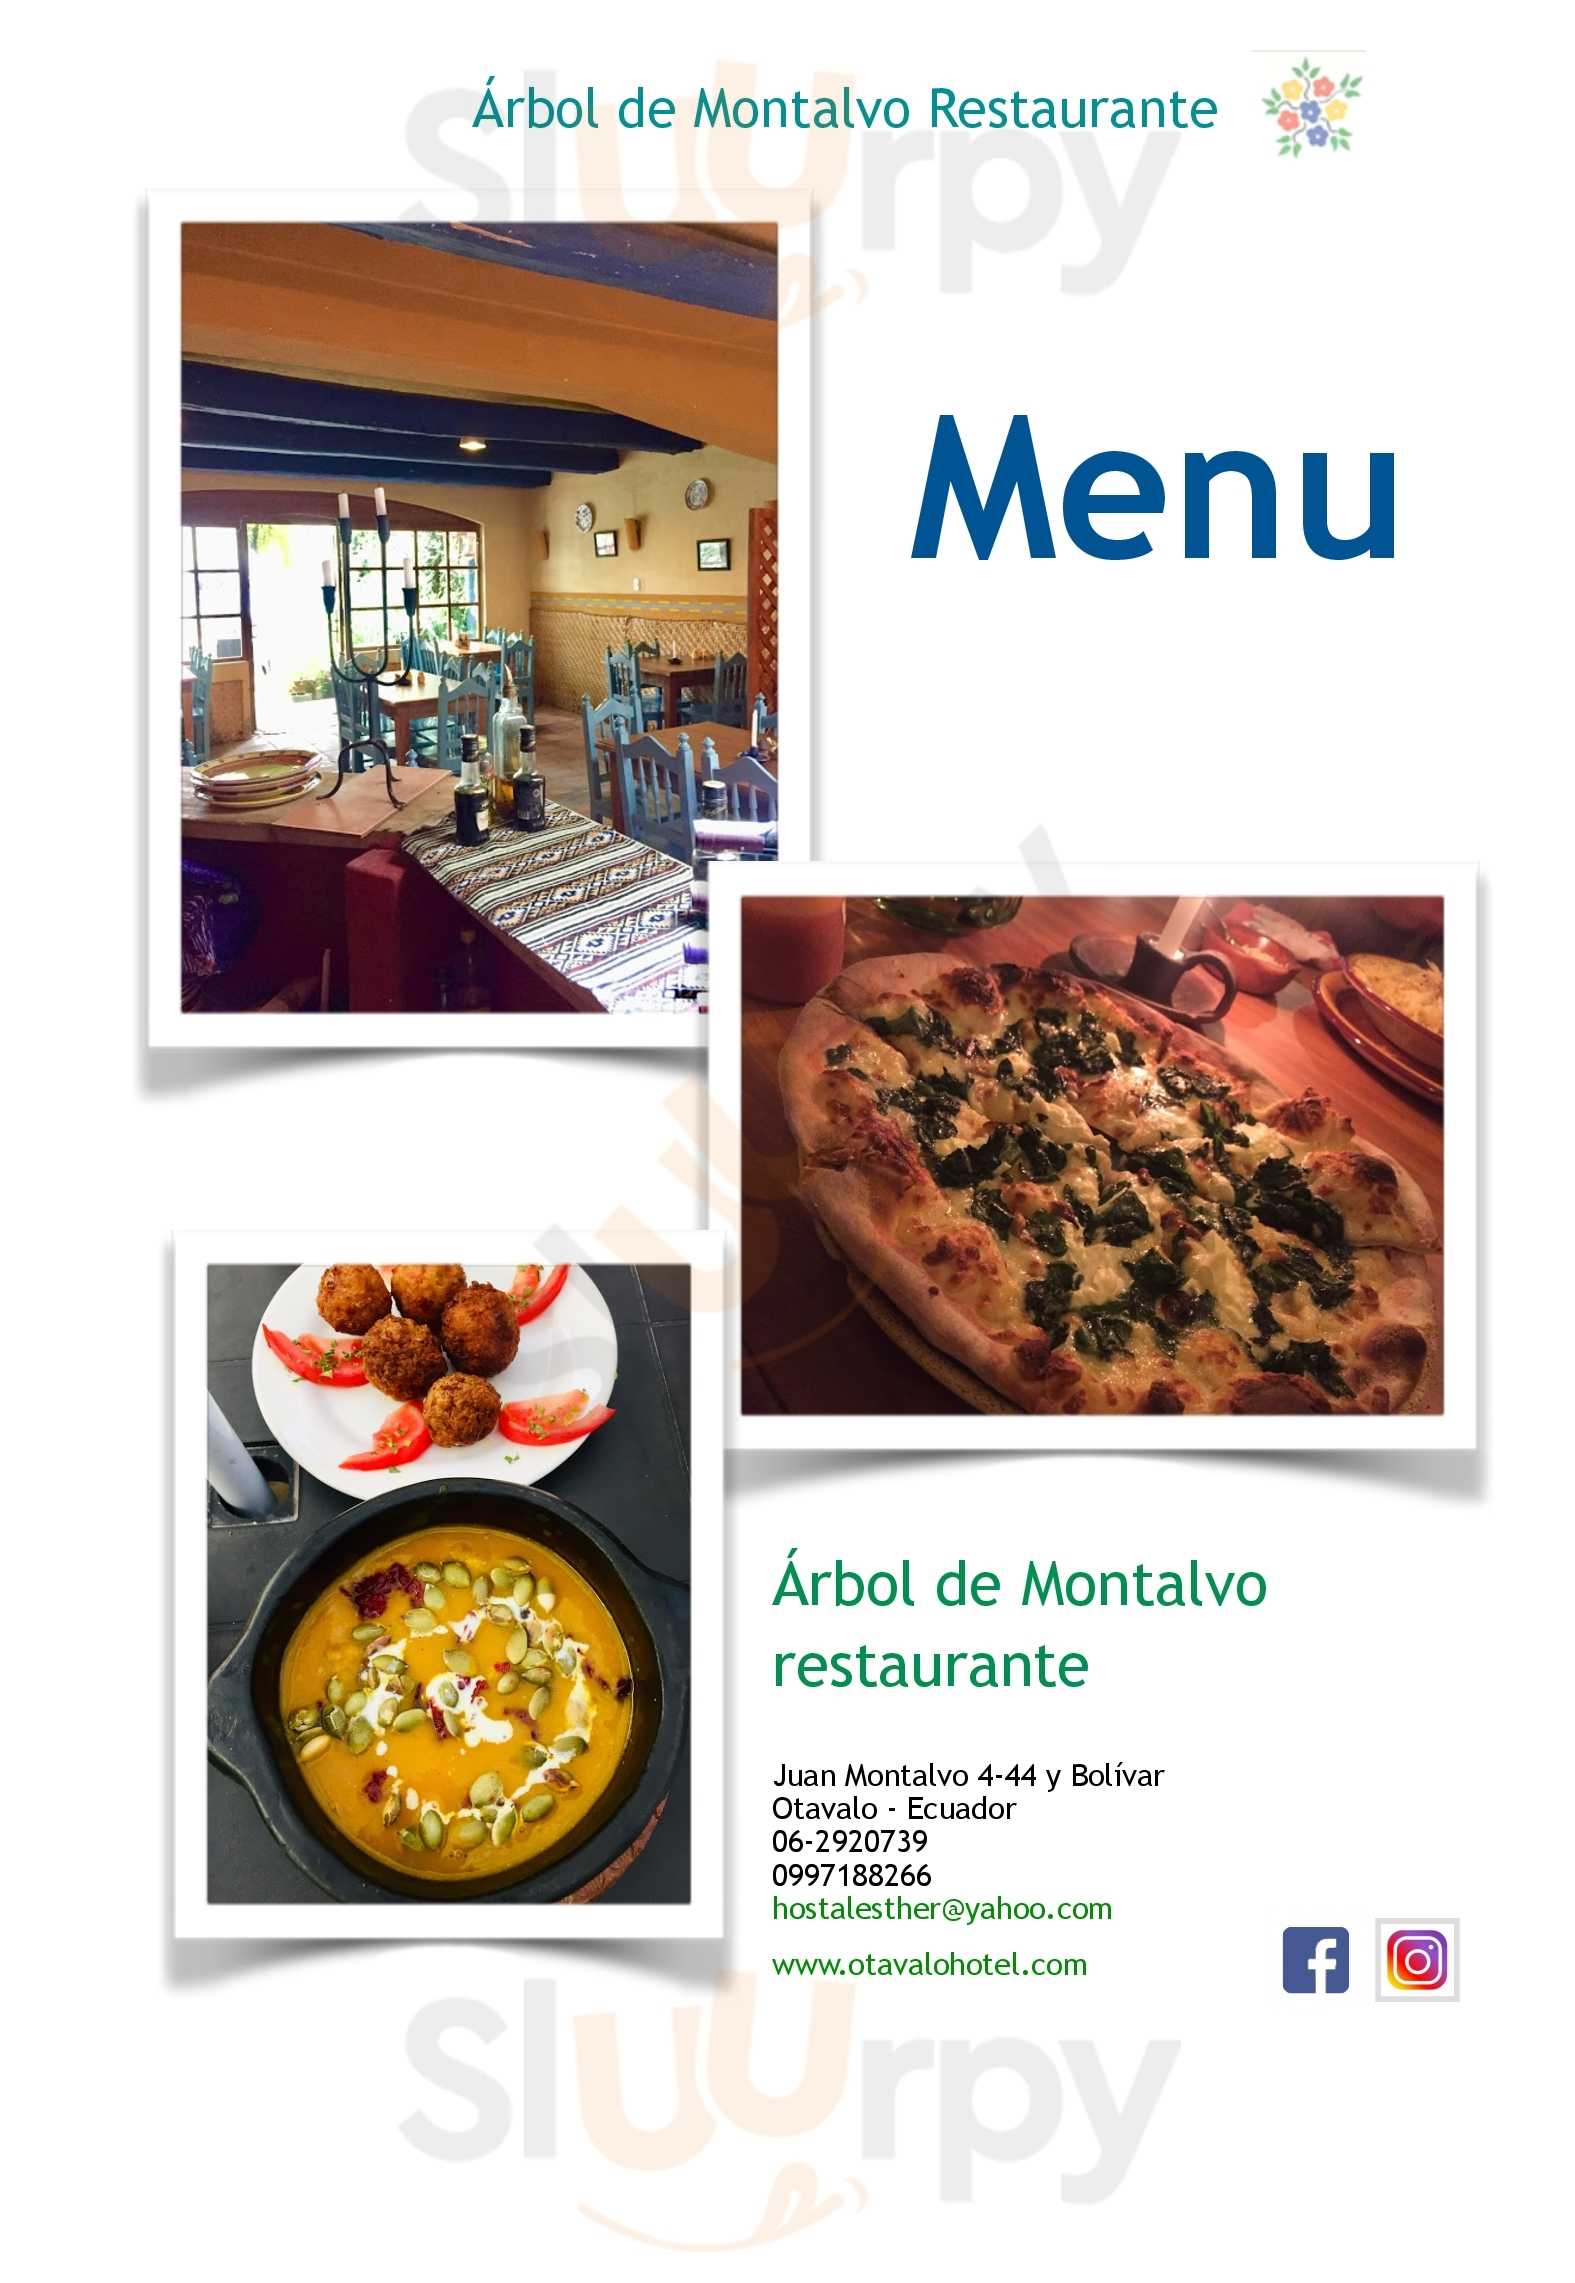 Arbol De Montalvo Restaurant Otavalo Menu - 1